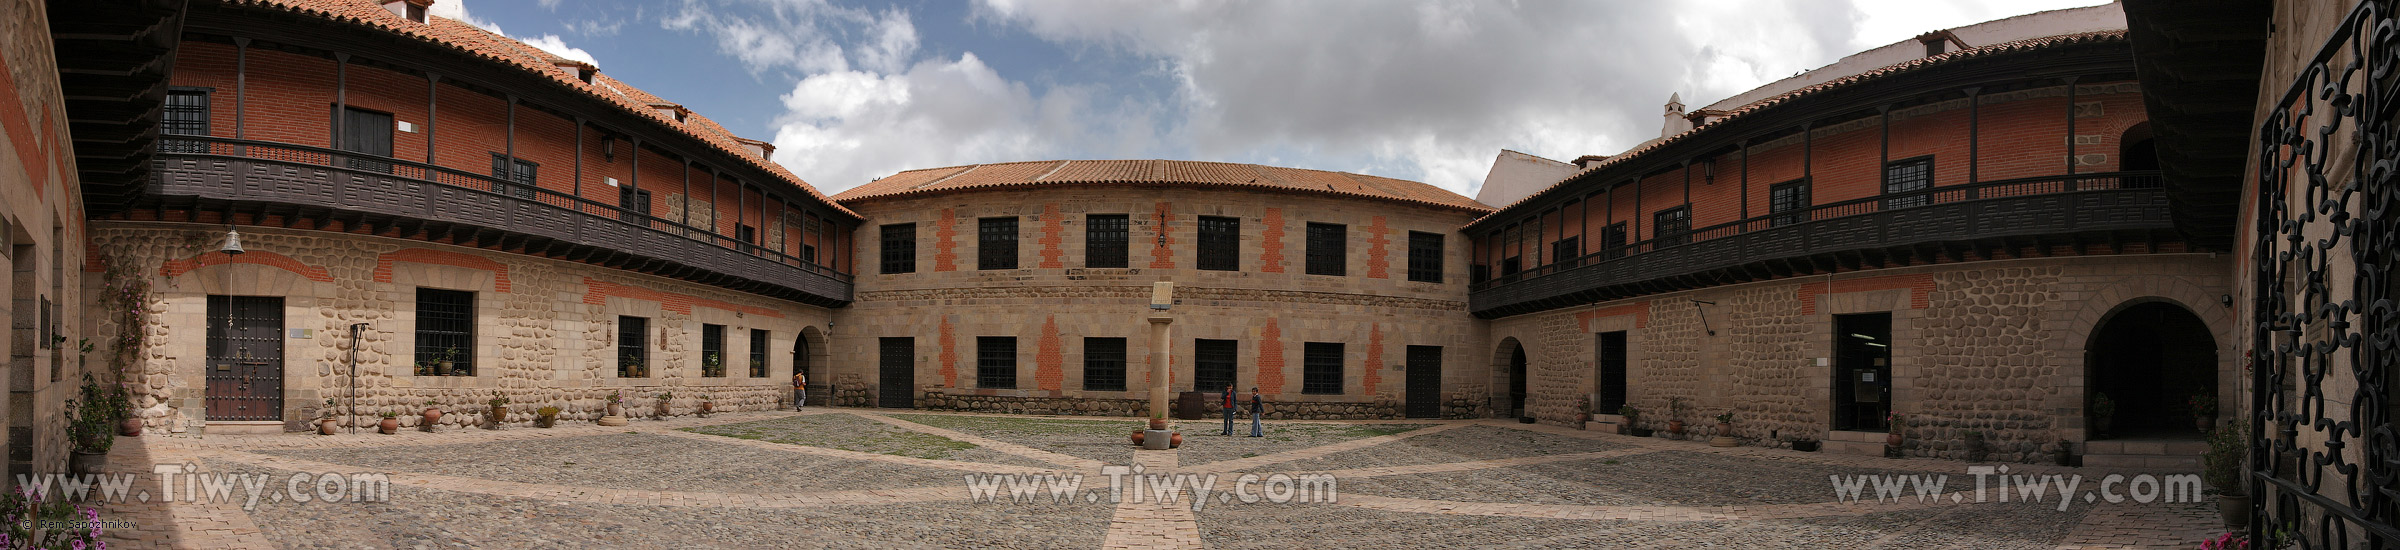 Casa de la Moneda - Potosí, Bolivia